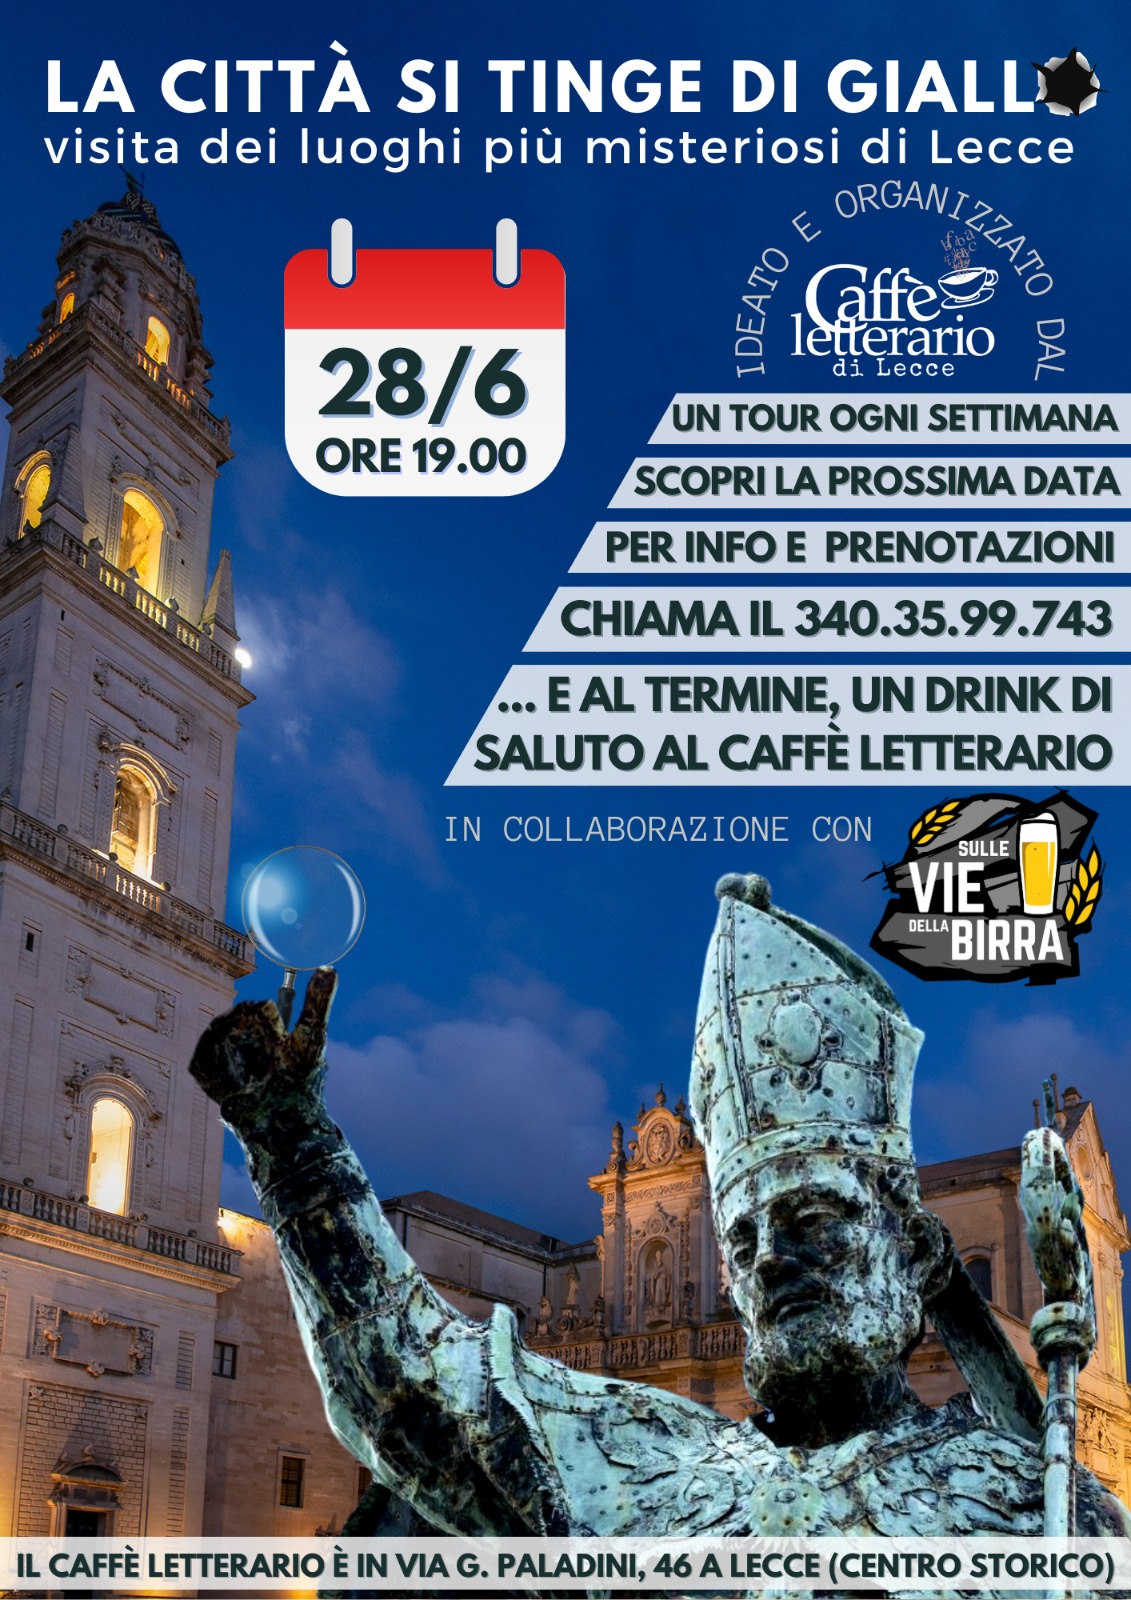 “La Città si tinge di Giallo”, iniziativa del Caffè Letterario” questa sera a Lecce.